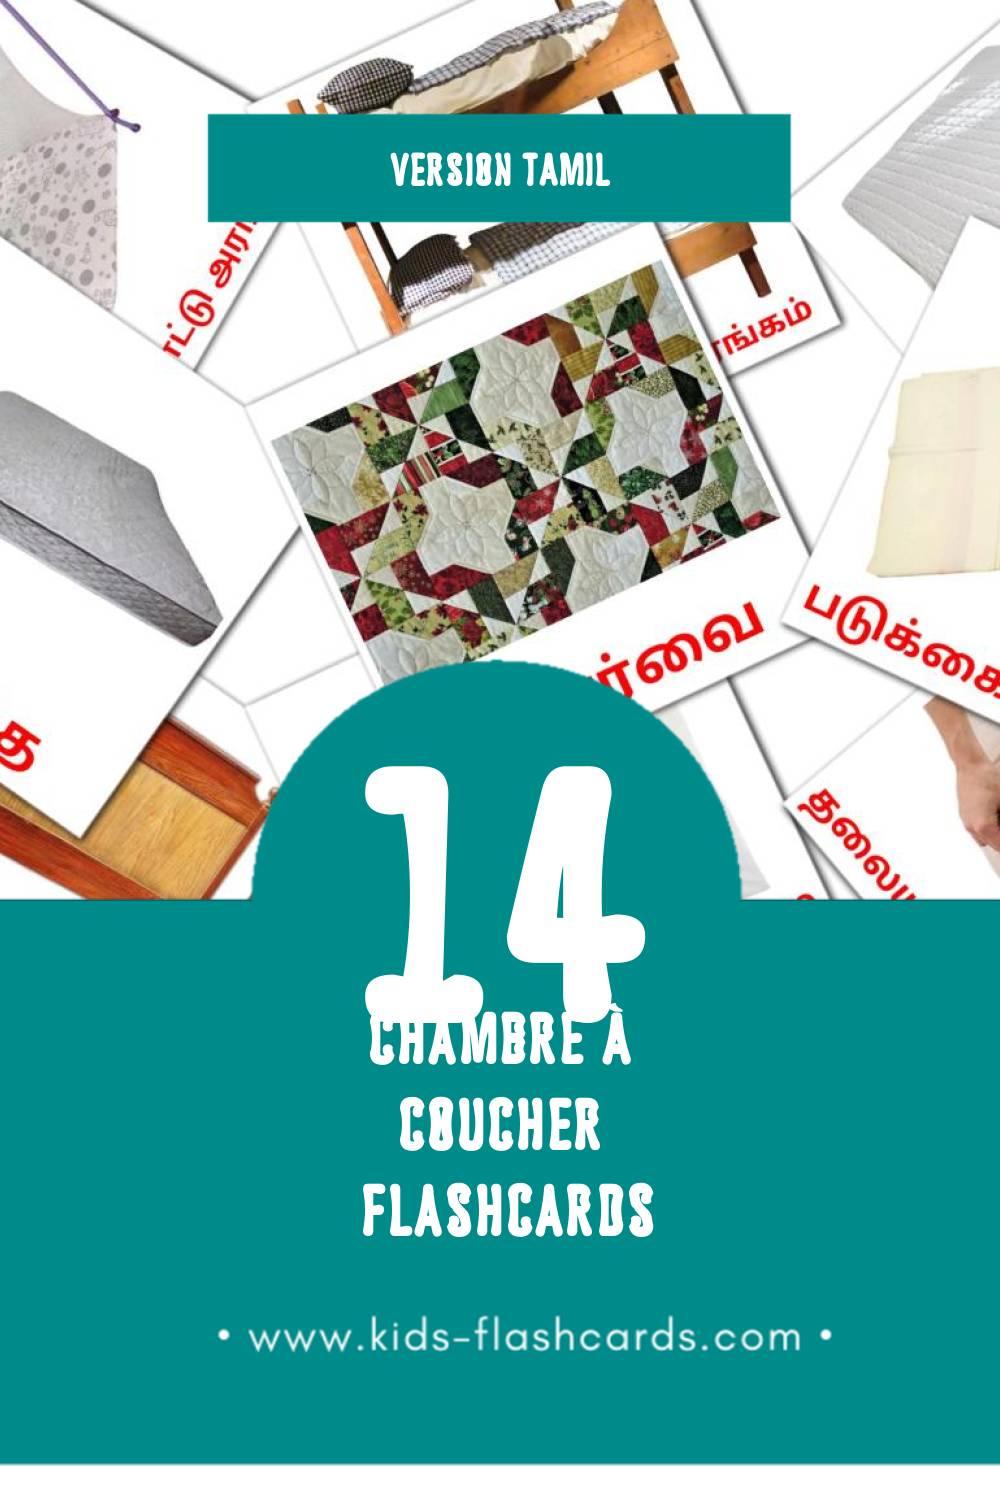 Flashcards Visual படுக்கையறை pour les tout-petits (14 cartes en Tamil)